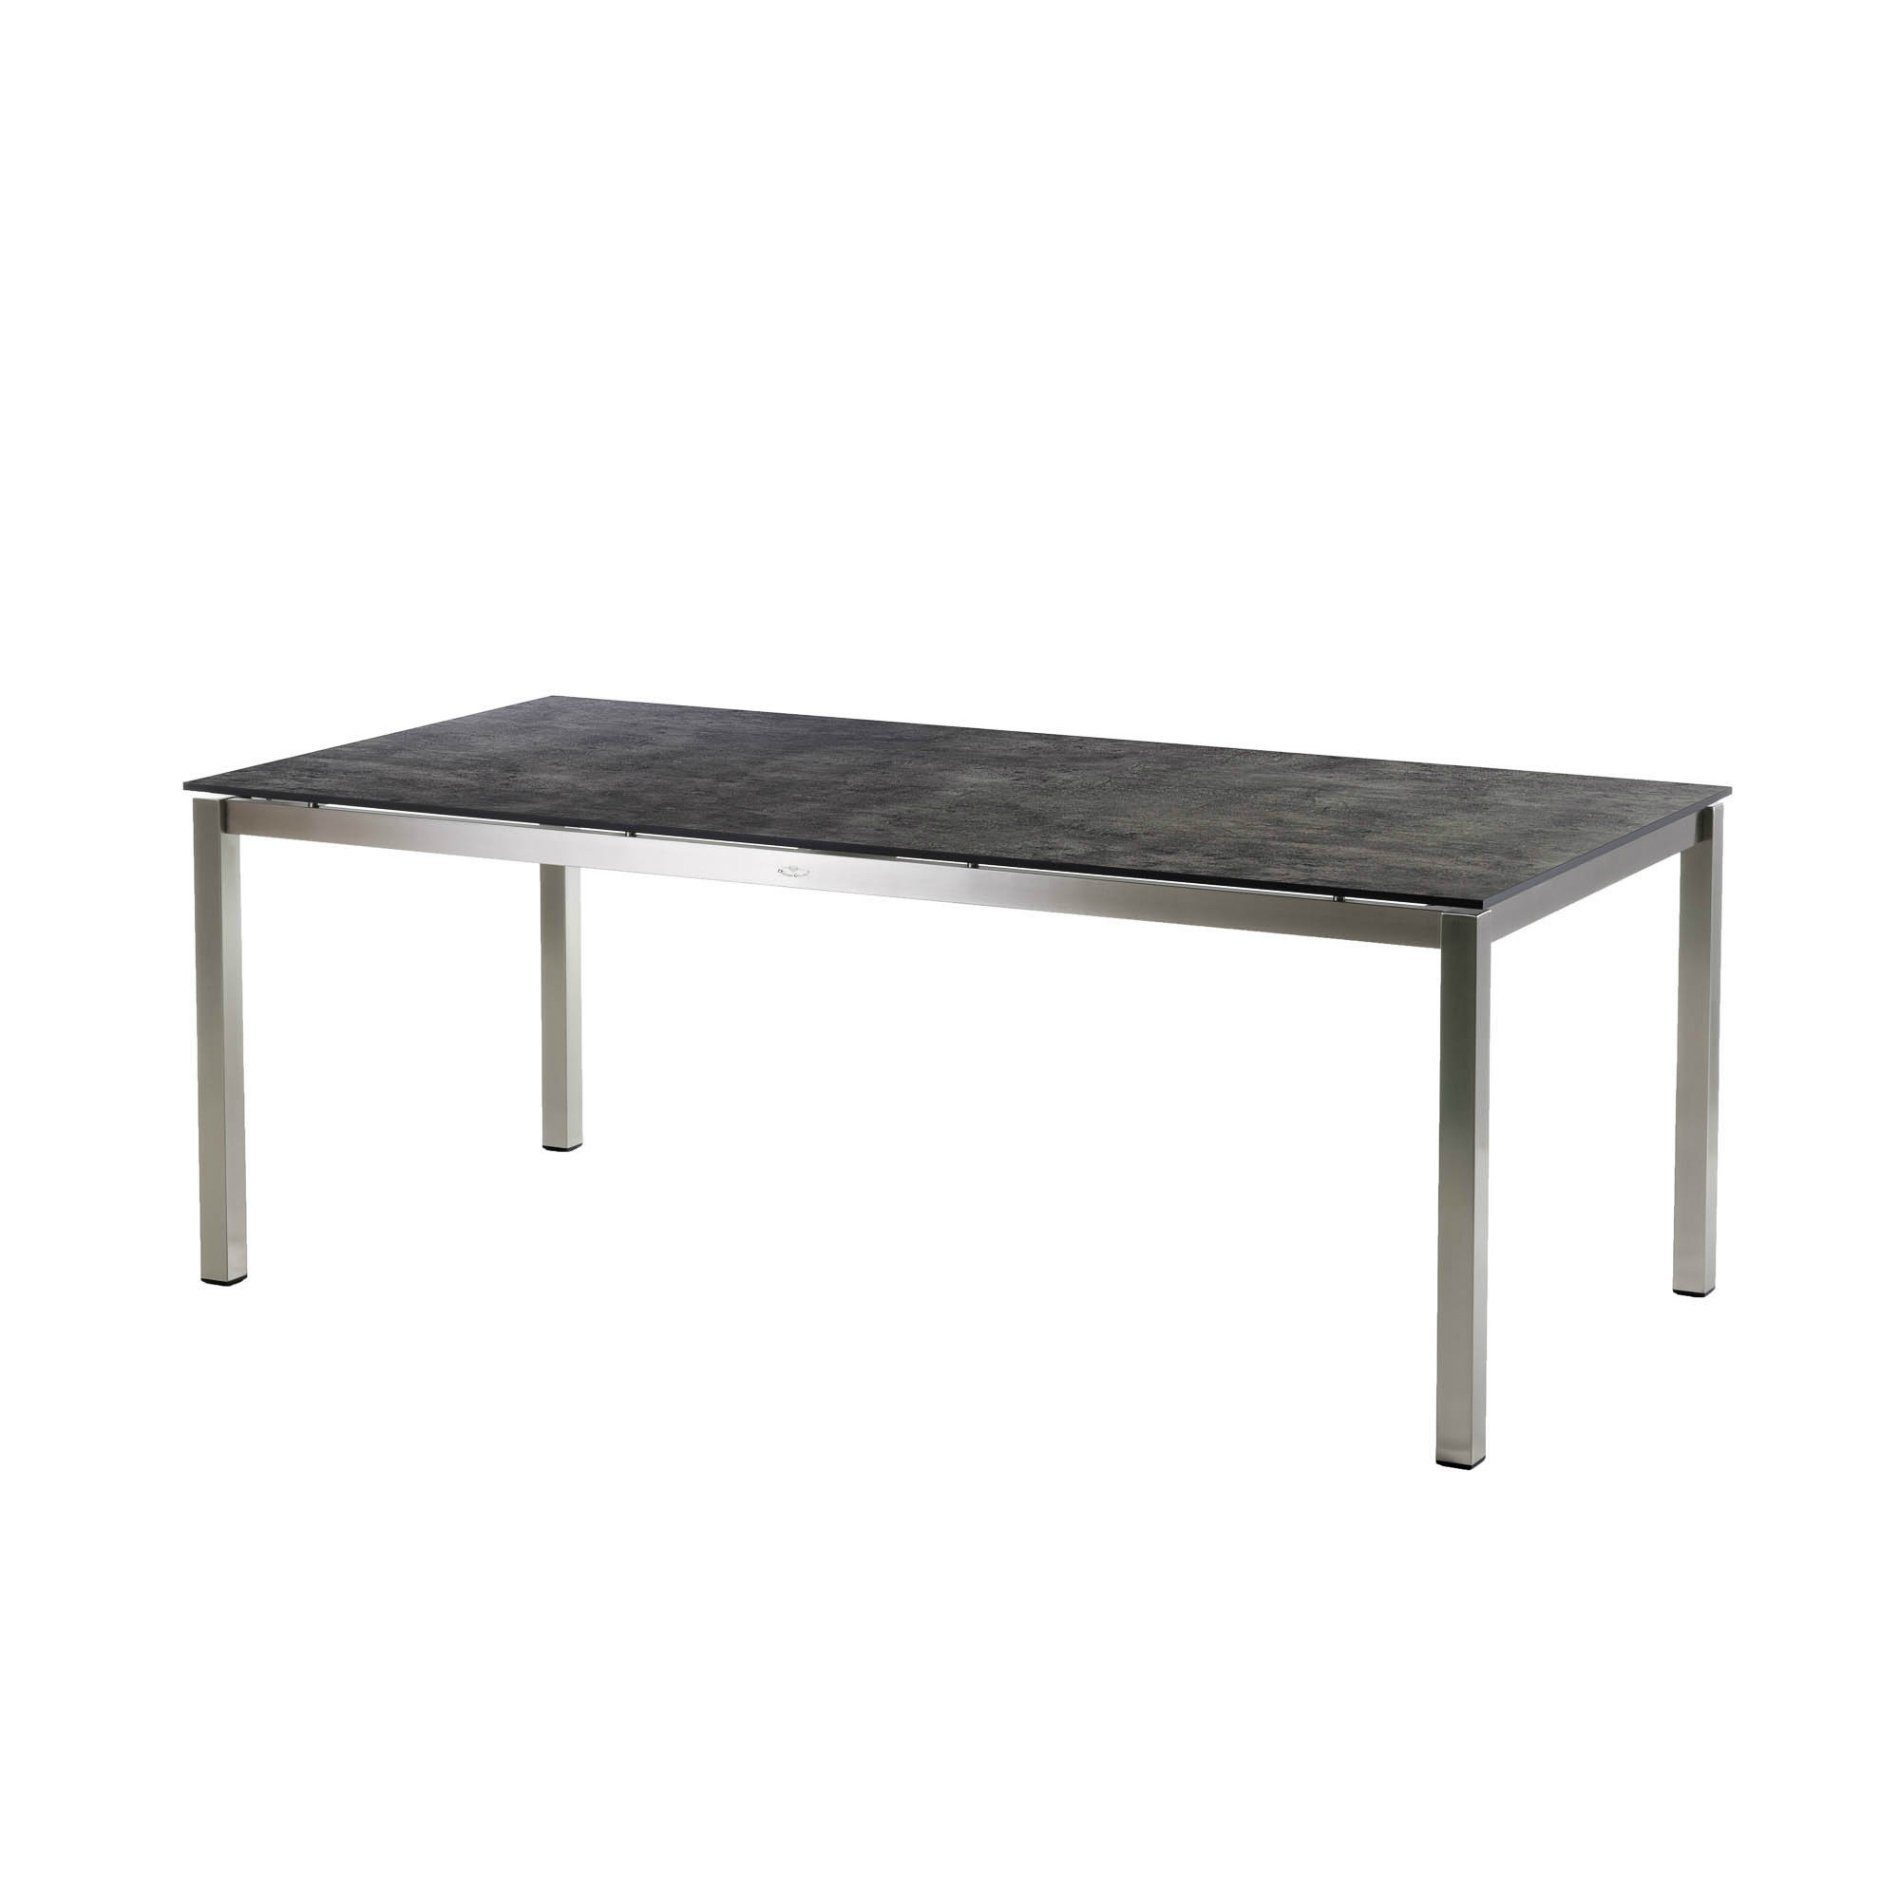 Diamond Garden Tisch "San Marino", Gestell Edelstahl, Platte DiGa Compact HPL Beton dunkel, 200x100 cm